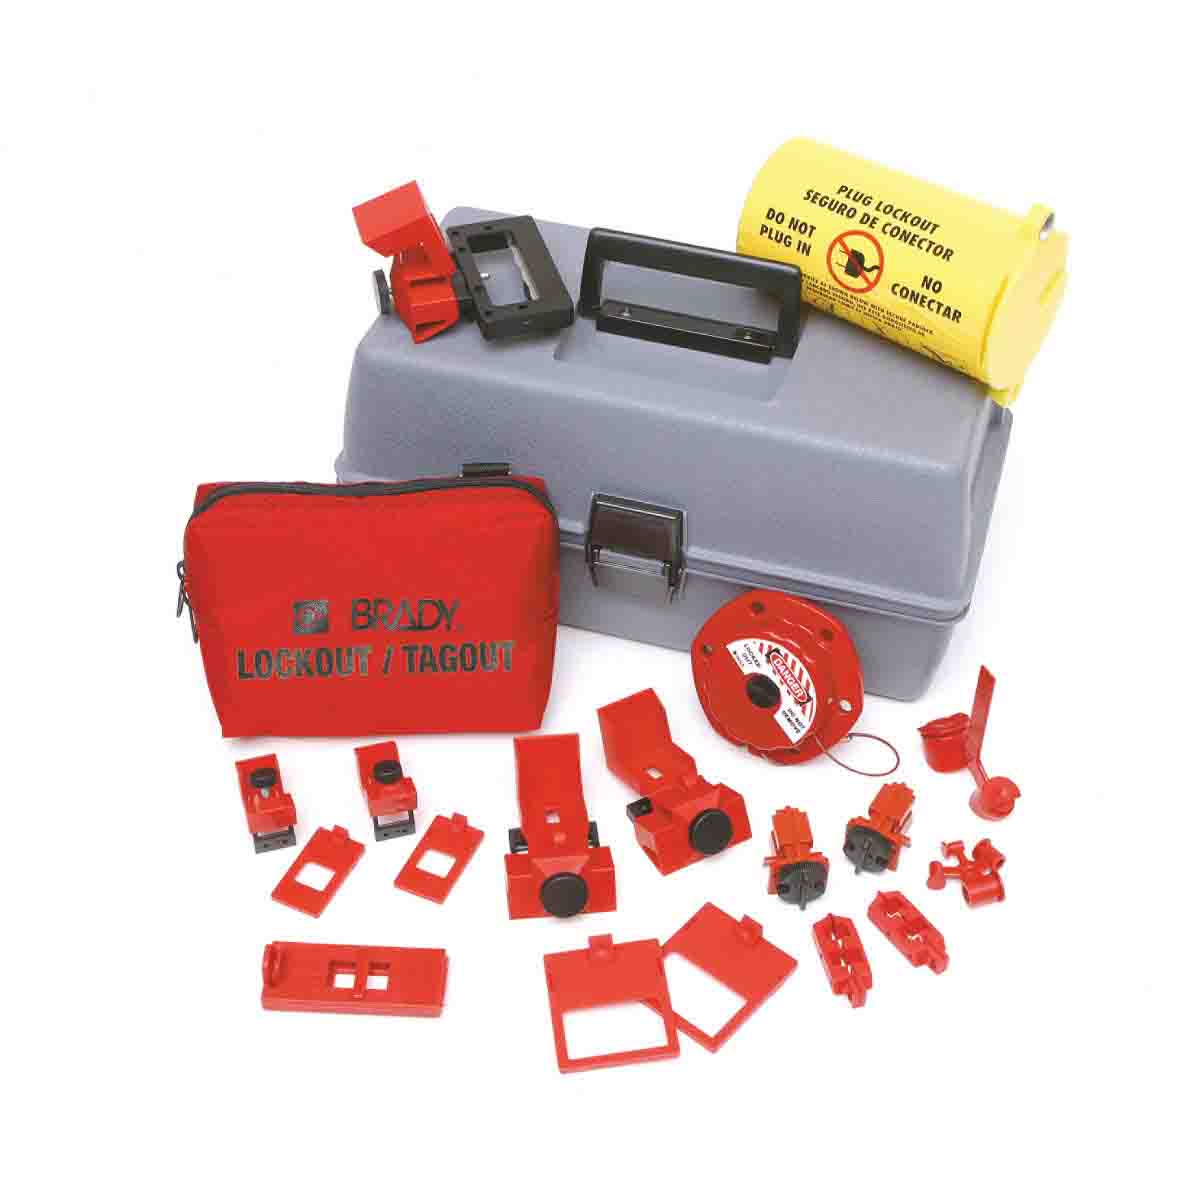 1 Kit Brady 65289 Lockout Tool Box w/Components 